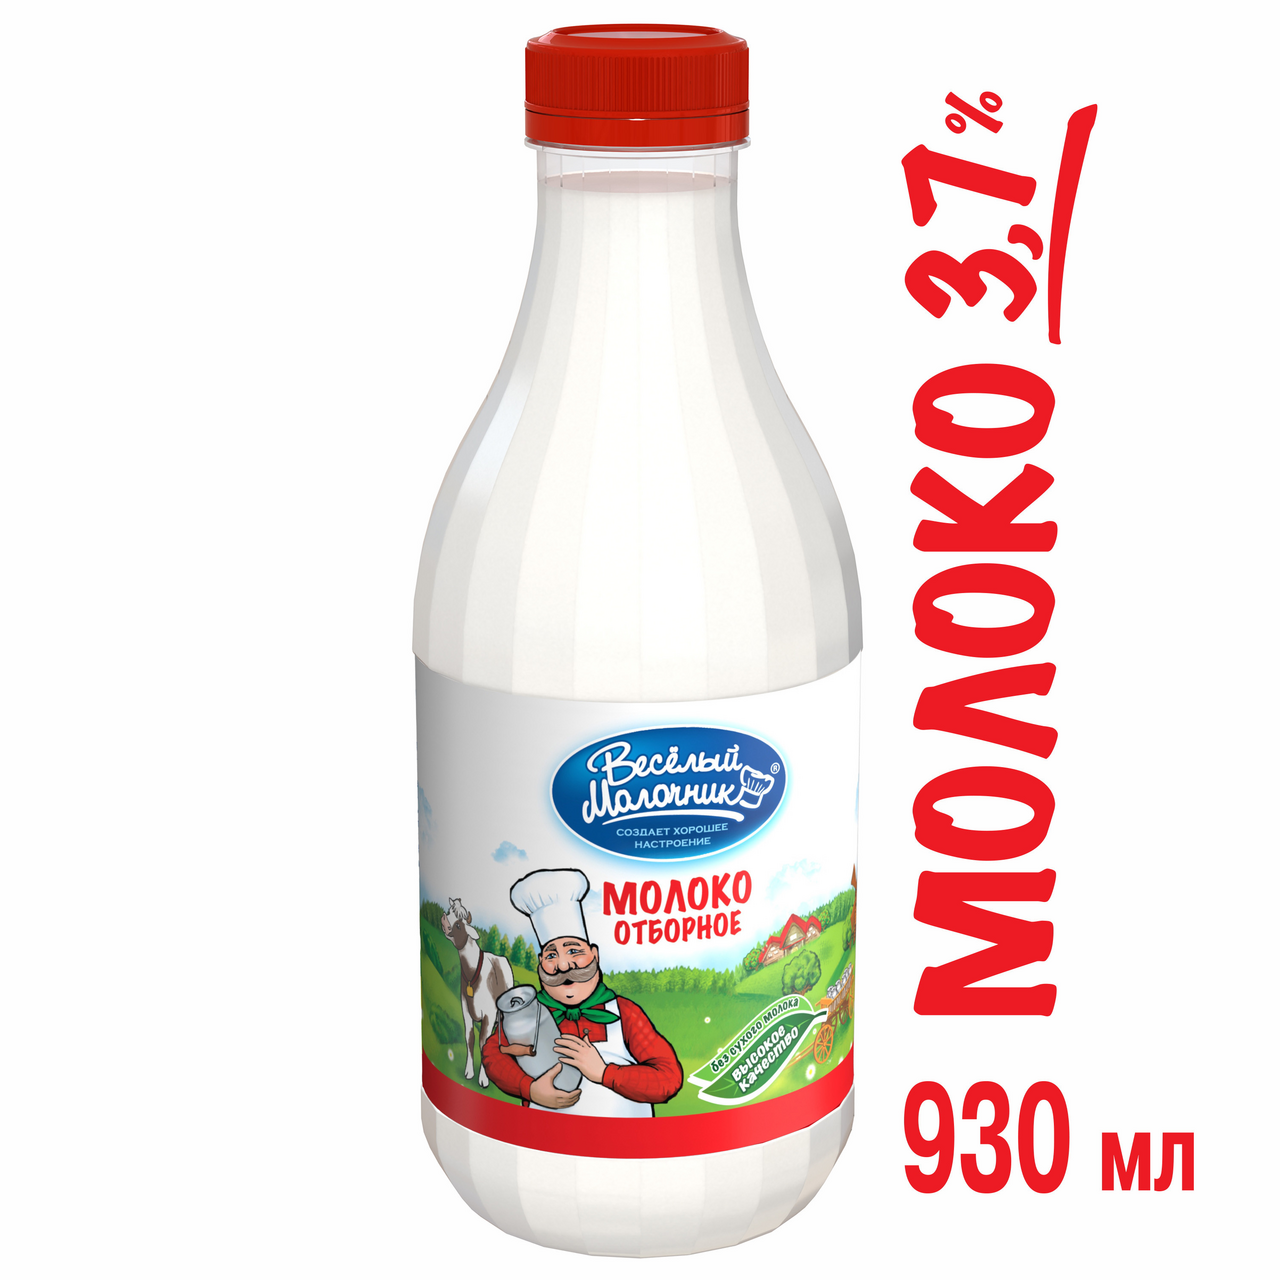 Молоко ВЕСЕЛЫЙ МОЛОЧНИК цельное отборное пастеризованное, 930 г